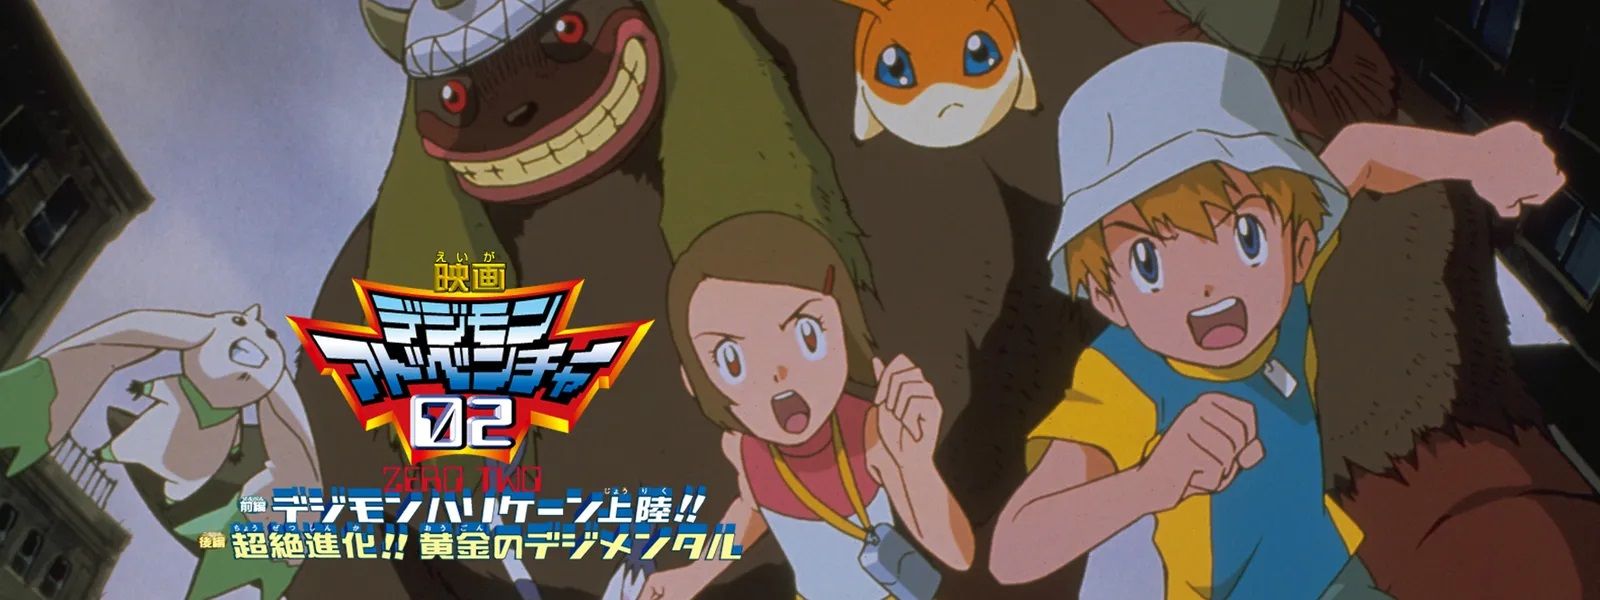 Digimon Adventure 02 Film 1 visual 2